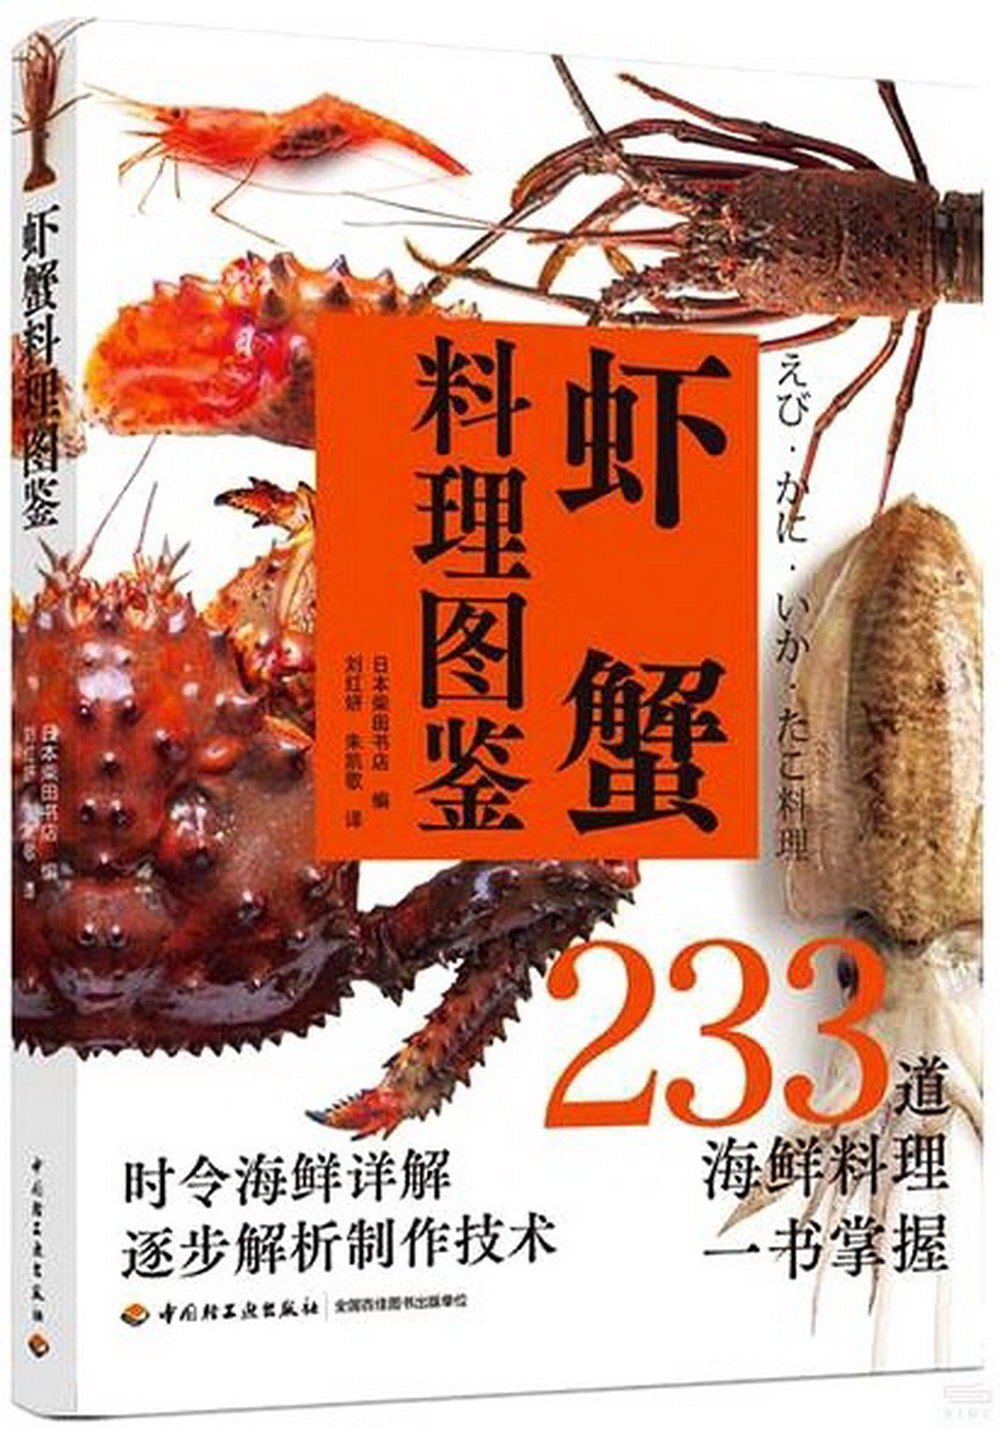 蝦蟹料理圖鑒